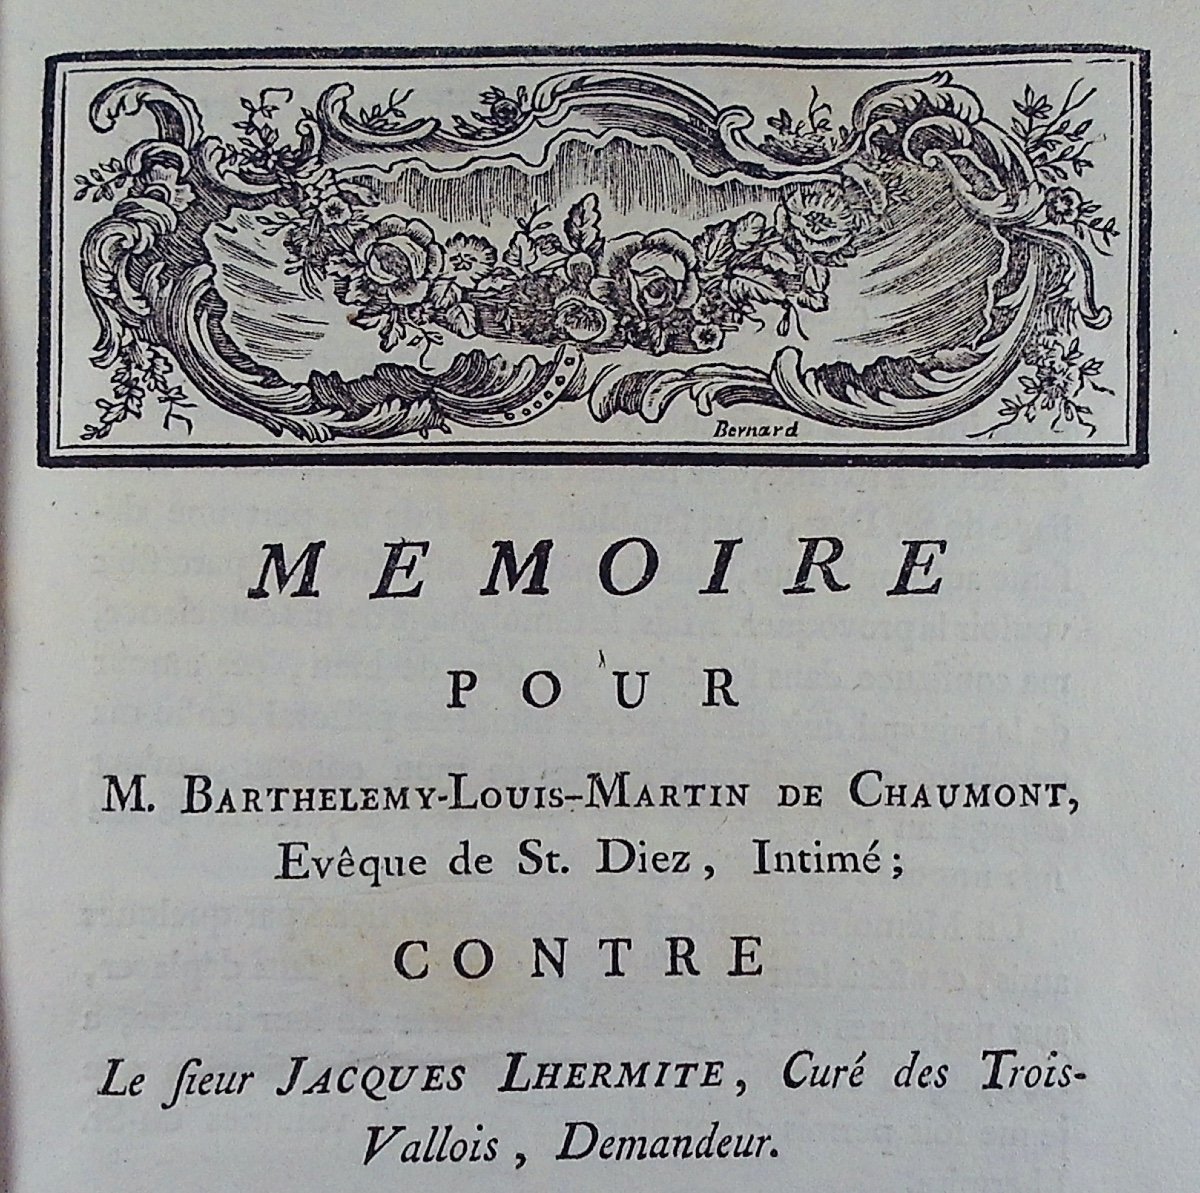 Mémoire pour M. Barthélémy-Louis-Martin de Chaumont, Évêque de St. Diez, broché, 1789.